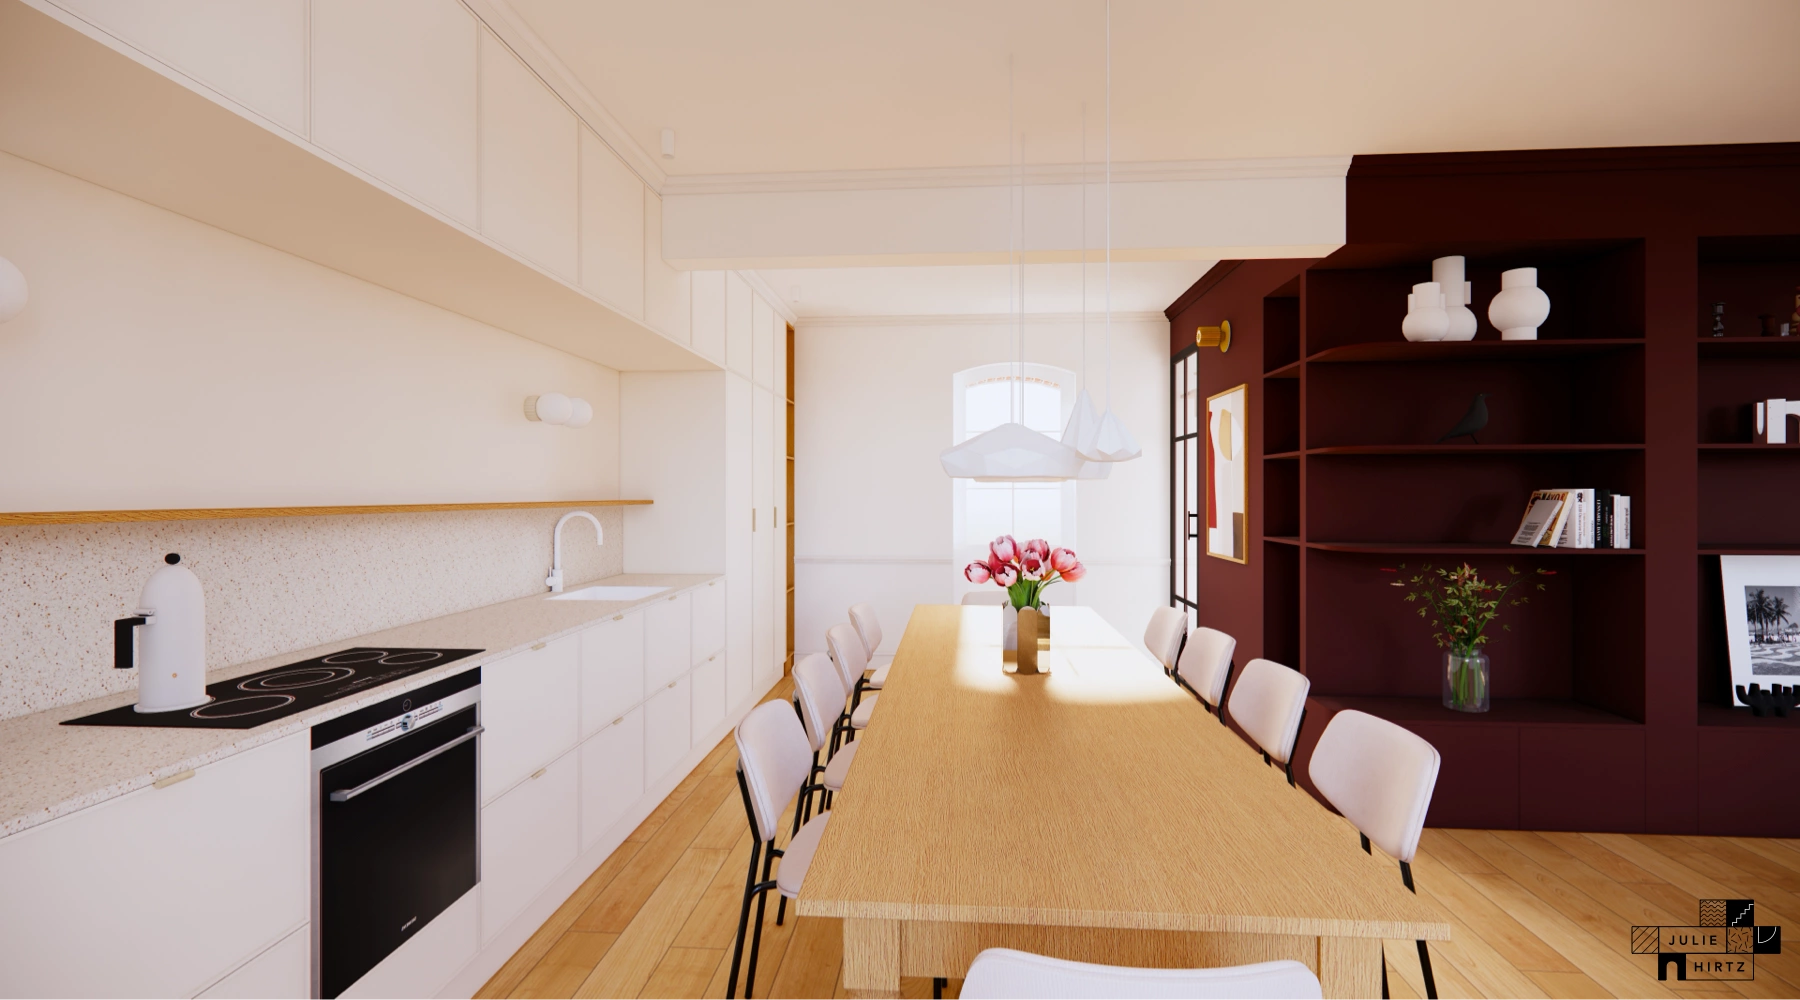 Projet Lucet • Rénovation d'une maison familiale à Saint-Malo : vue de la cuisine